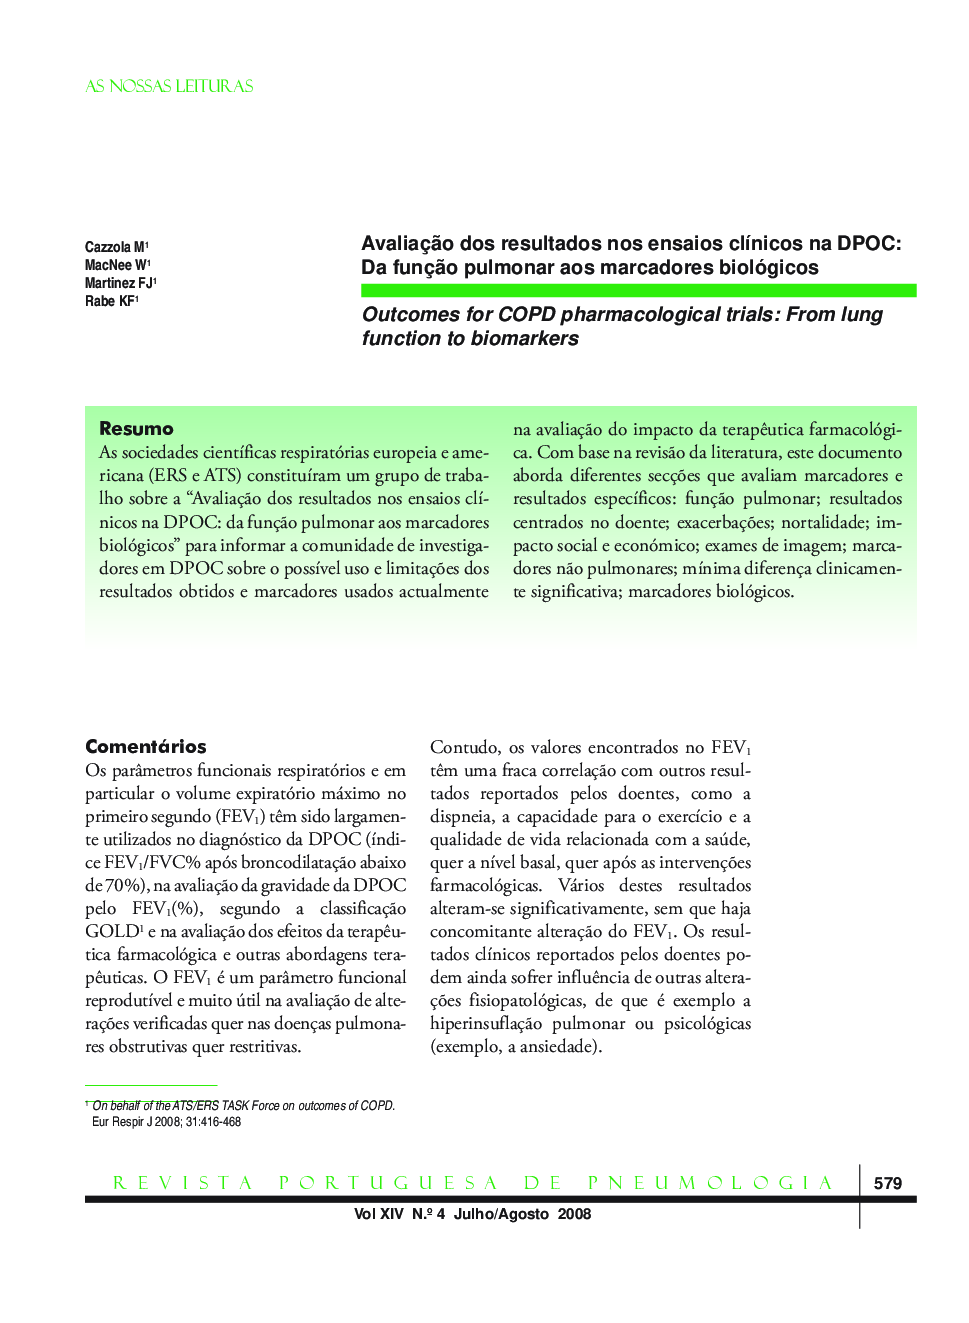 Avaliação dos resultados nos ensaios clínicos na DPOC: Da função pulmonar aos marcadores biológicos